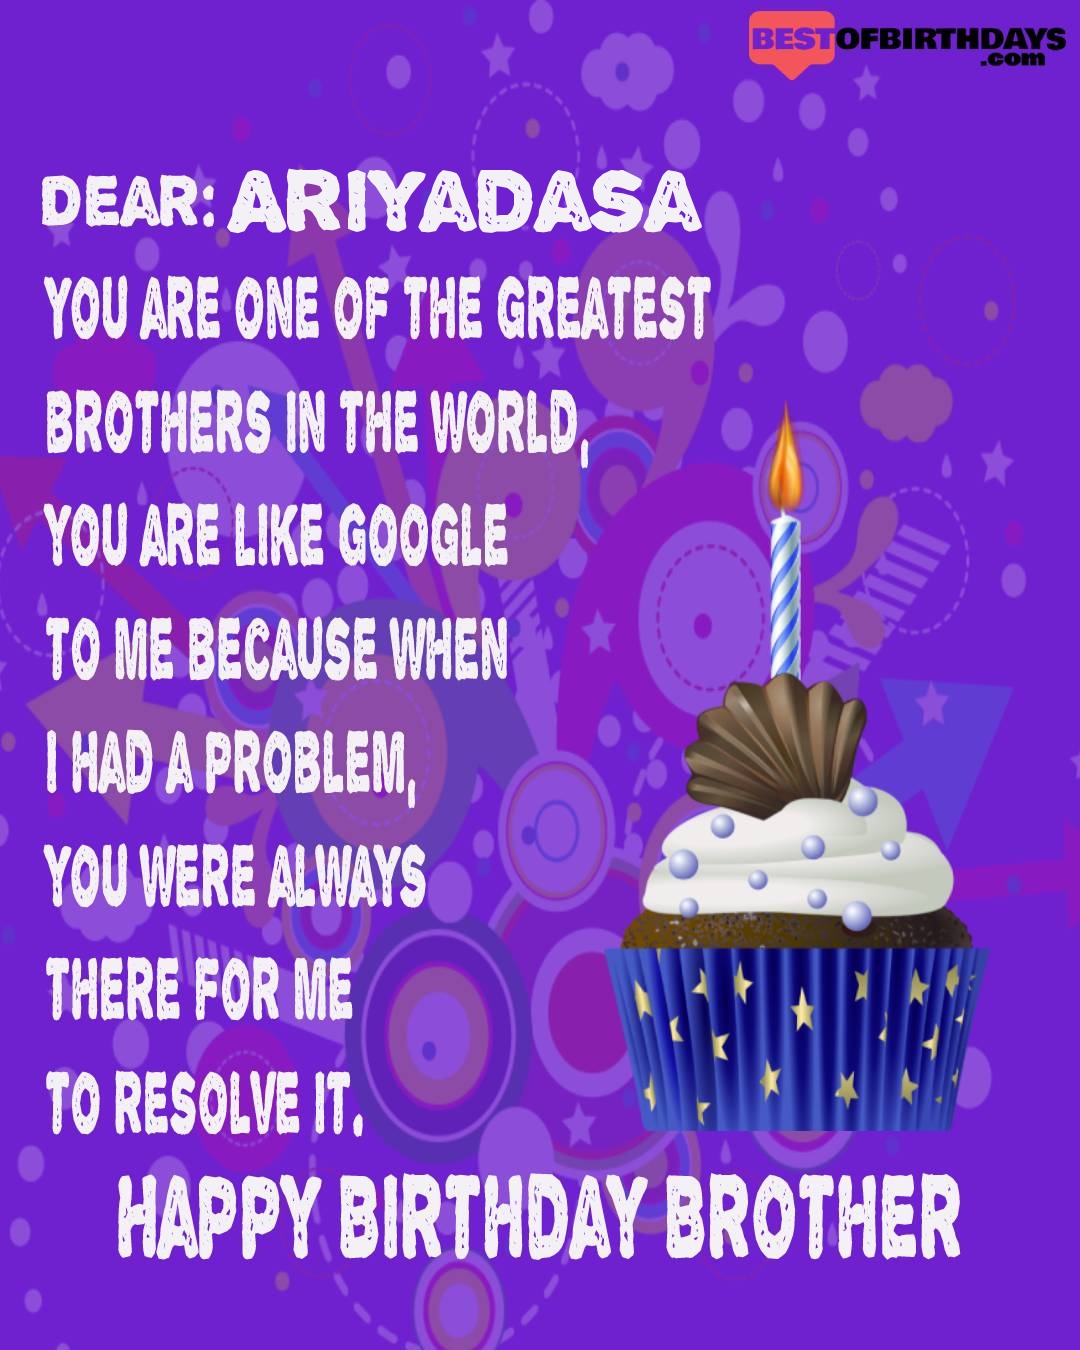 Happy birthday ariyadasa bhai brother bro